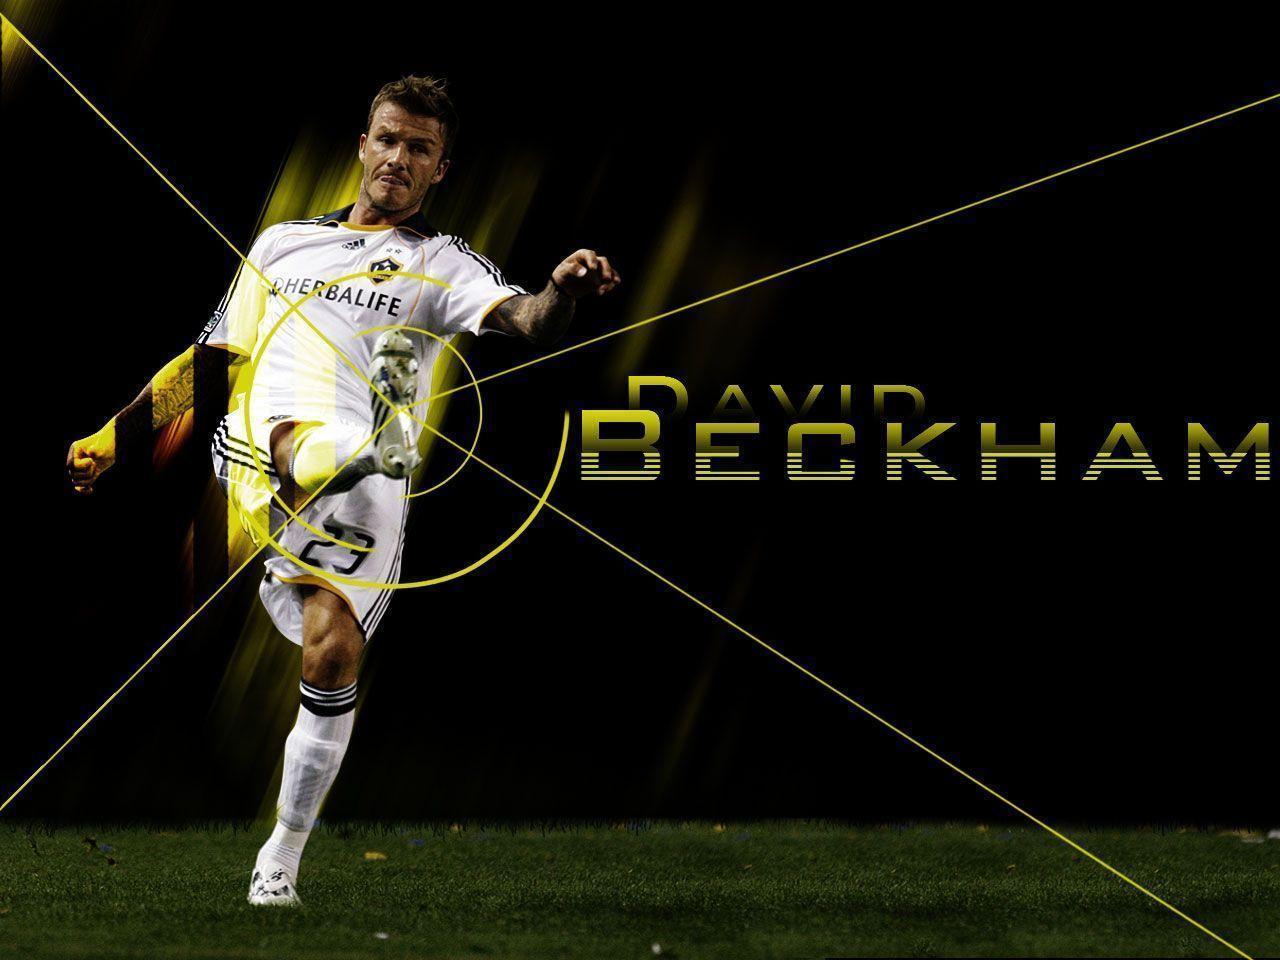 Football Super Star Player: David Beckham HD Wallpaper 2013